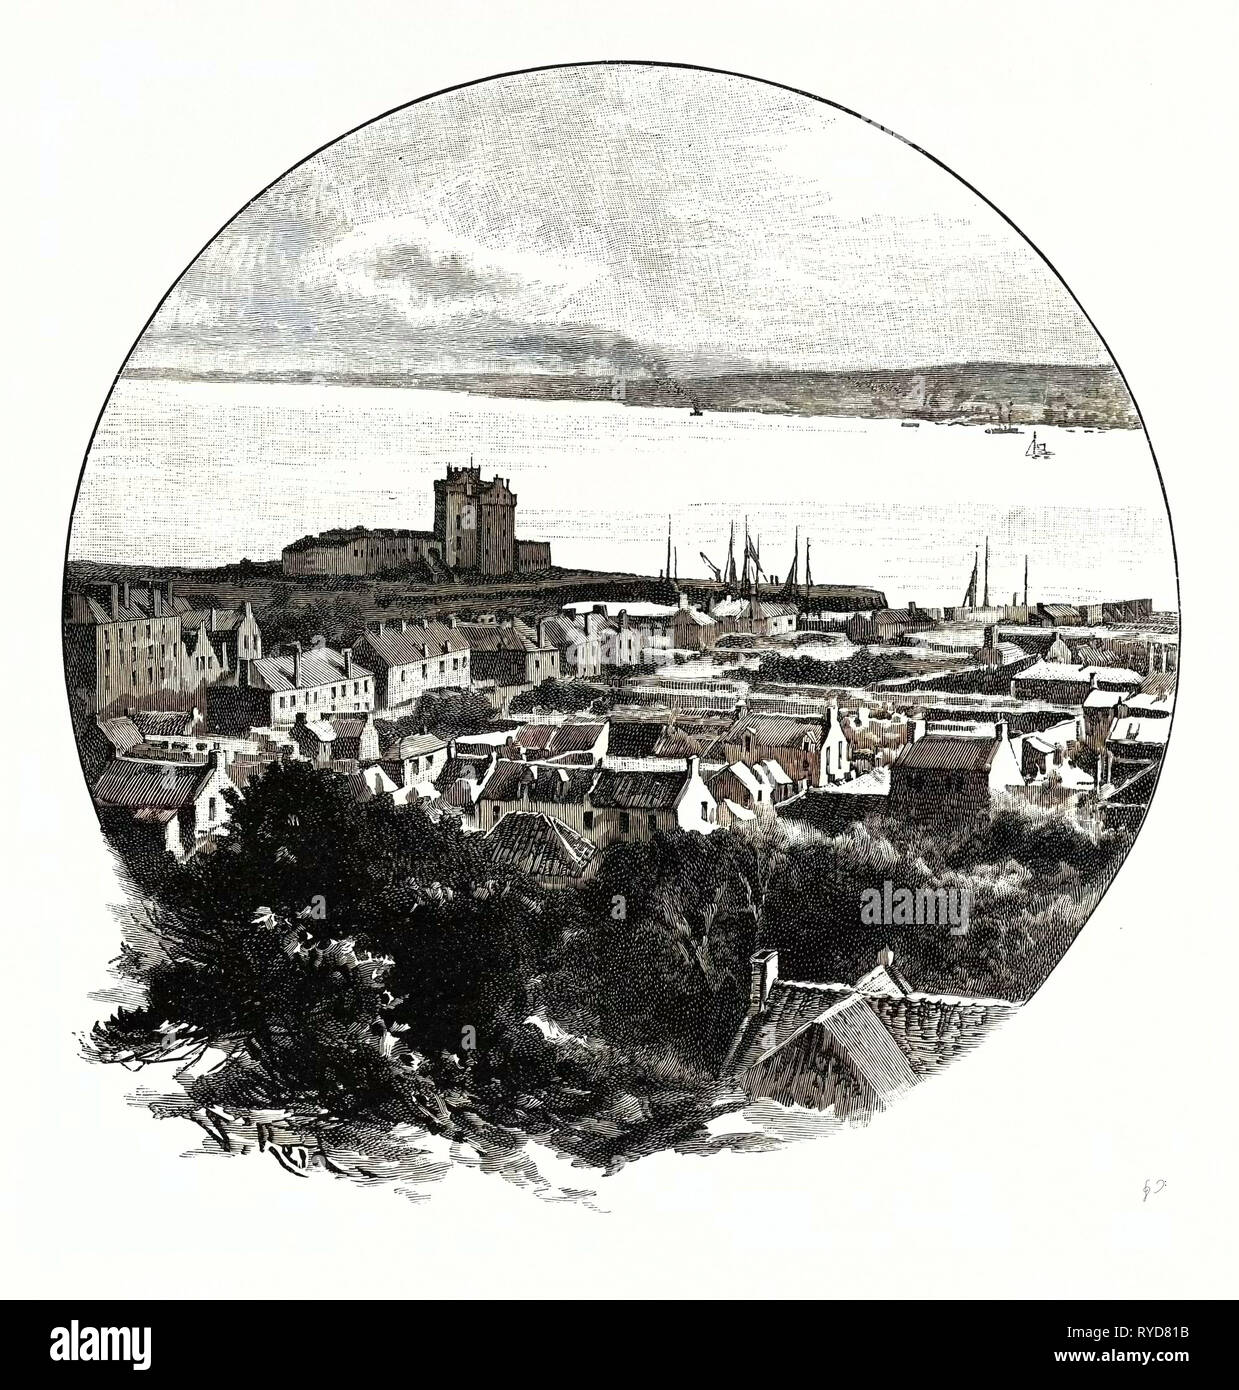 Dundee, von Broughty Ferry, UK. Dundee, offiziell die Stadt Dundee, ist der Fourth-Largest Ort in Schottland Stockfoto